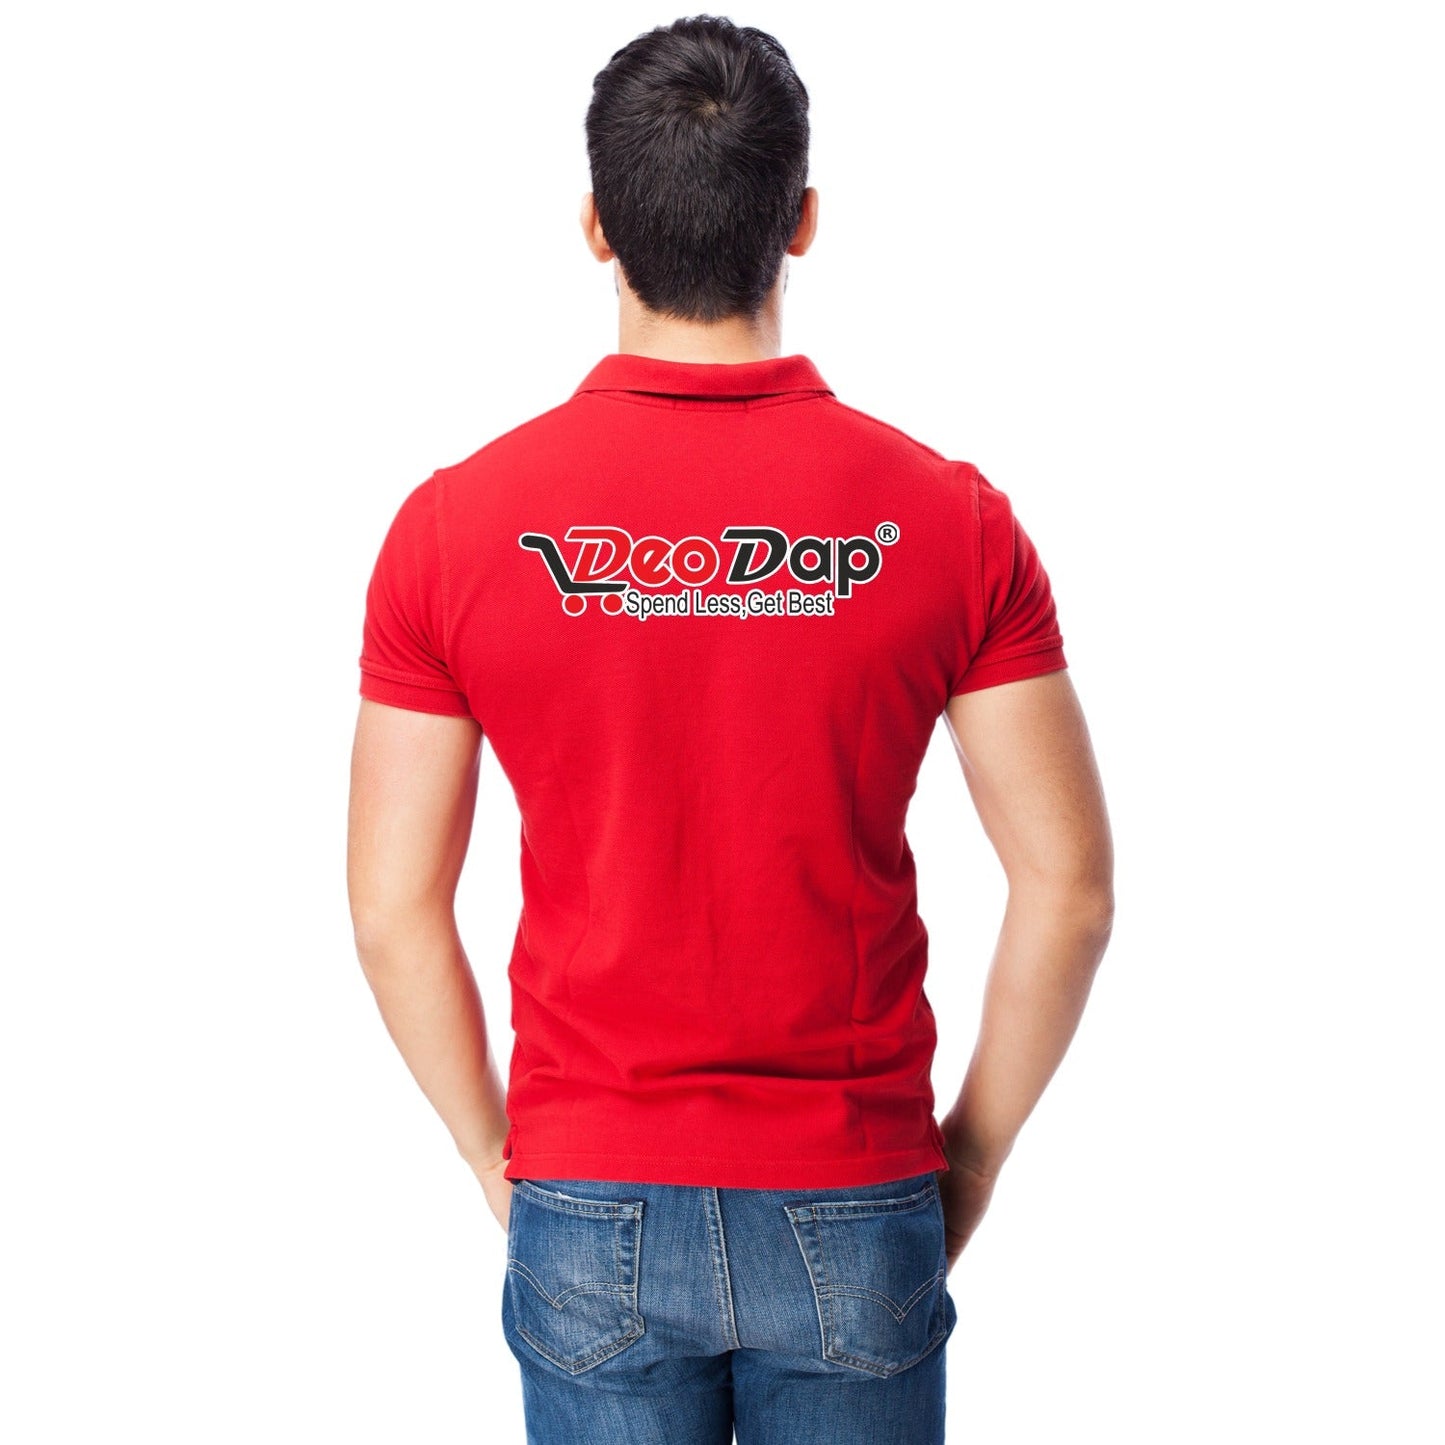 T-Shirt Soft & Premium T-Shirt Deodap Uniform T-Shirt (1 Pc )